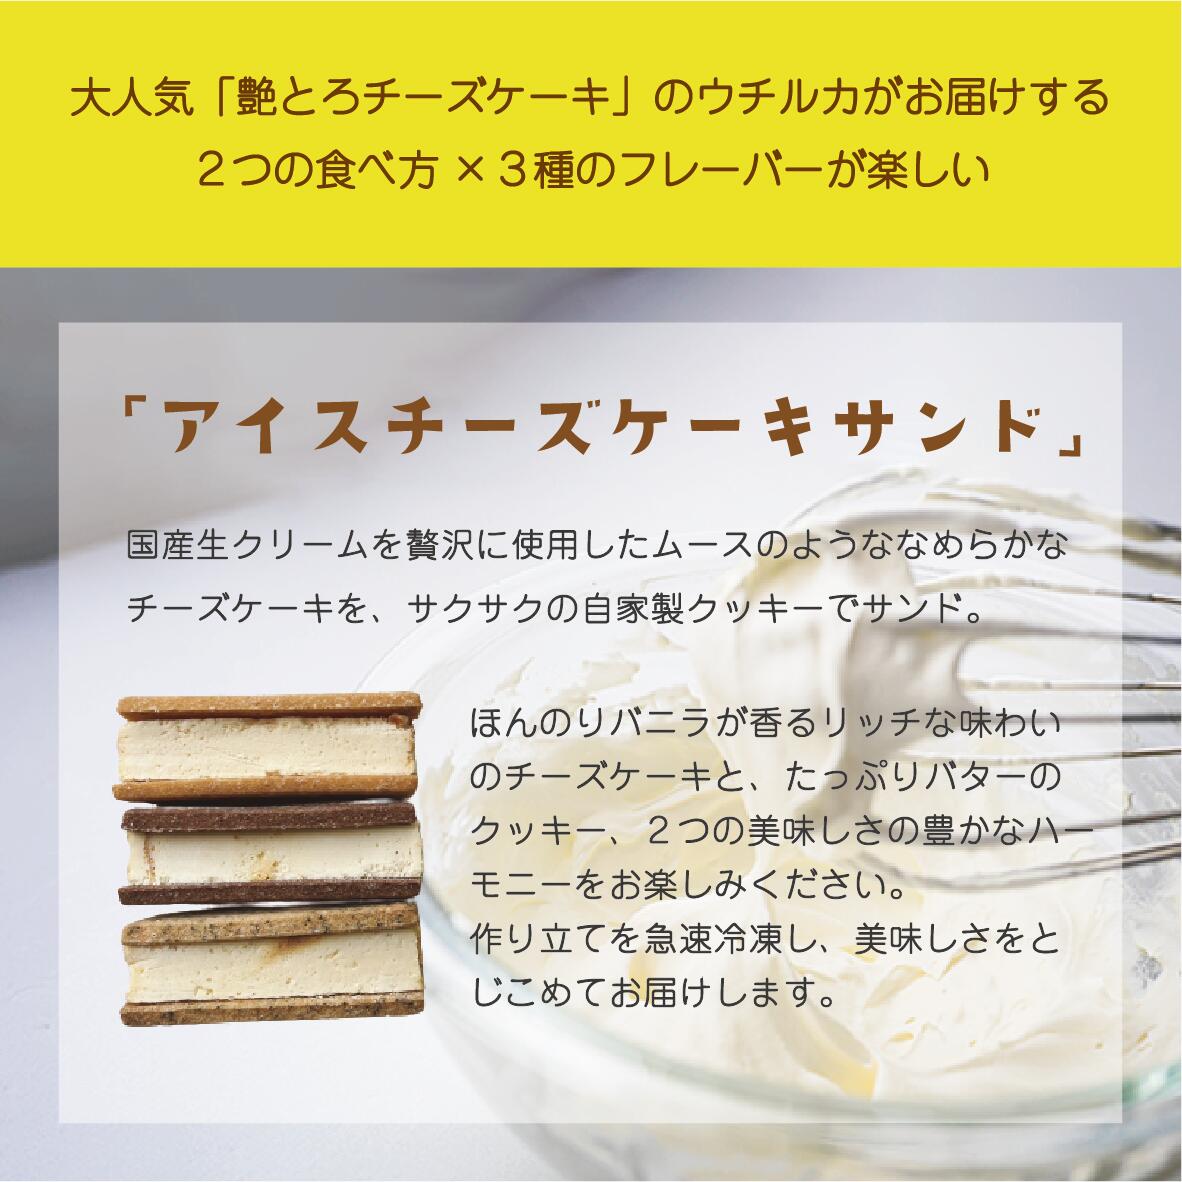 【アイスチーズケーキサンド(プレーン4個ショコ...の紹介画像2